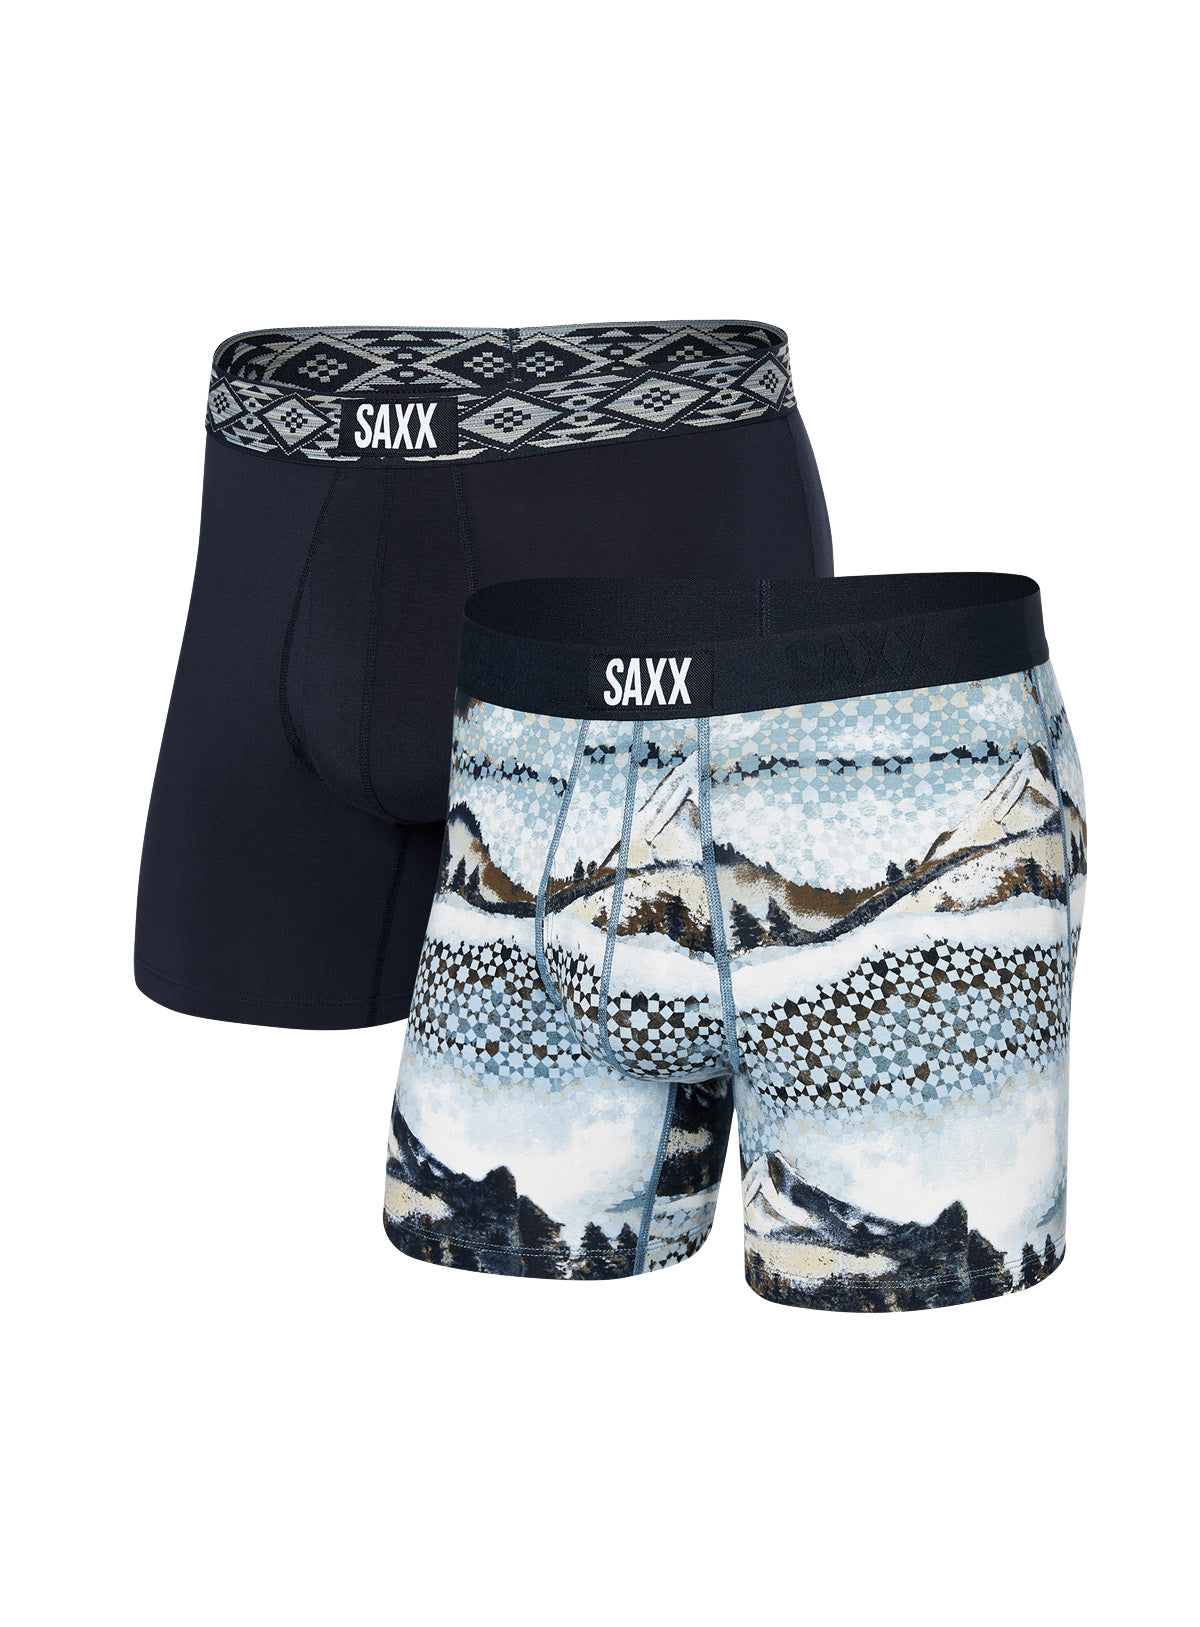 Mountains Print Boxer Underwear Duo